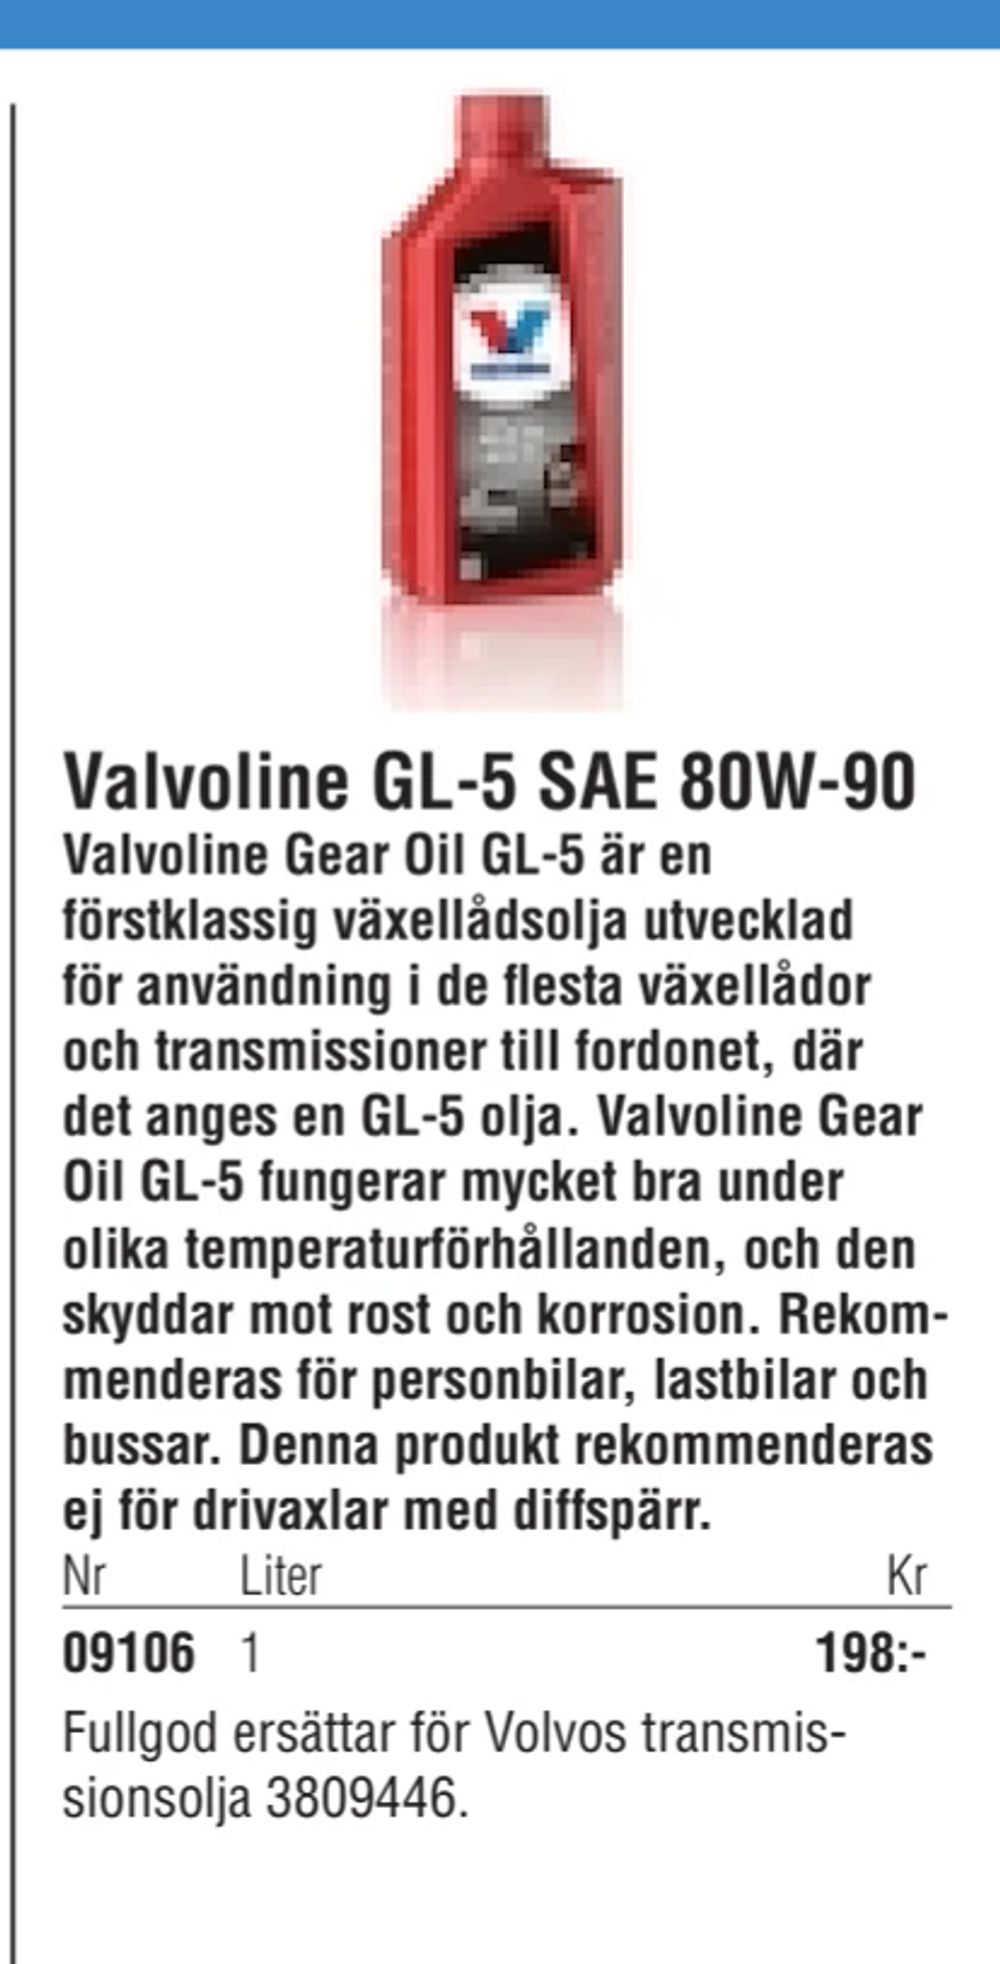 Erbjudanden på Valvoline GL-5 SAE 80W-90 från Erlandsons Brygga för 198 kr